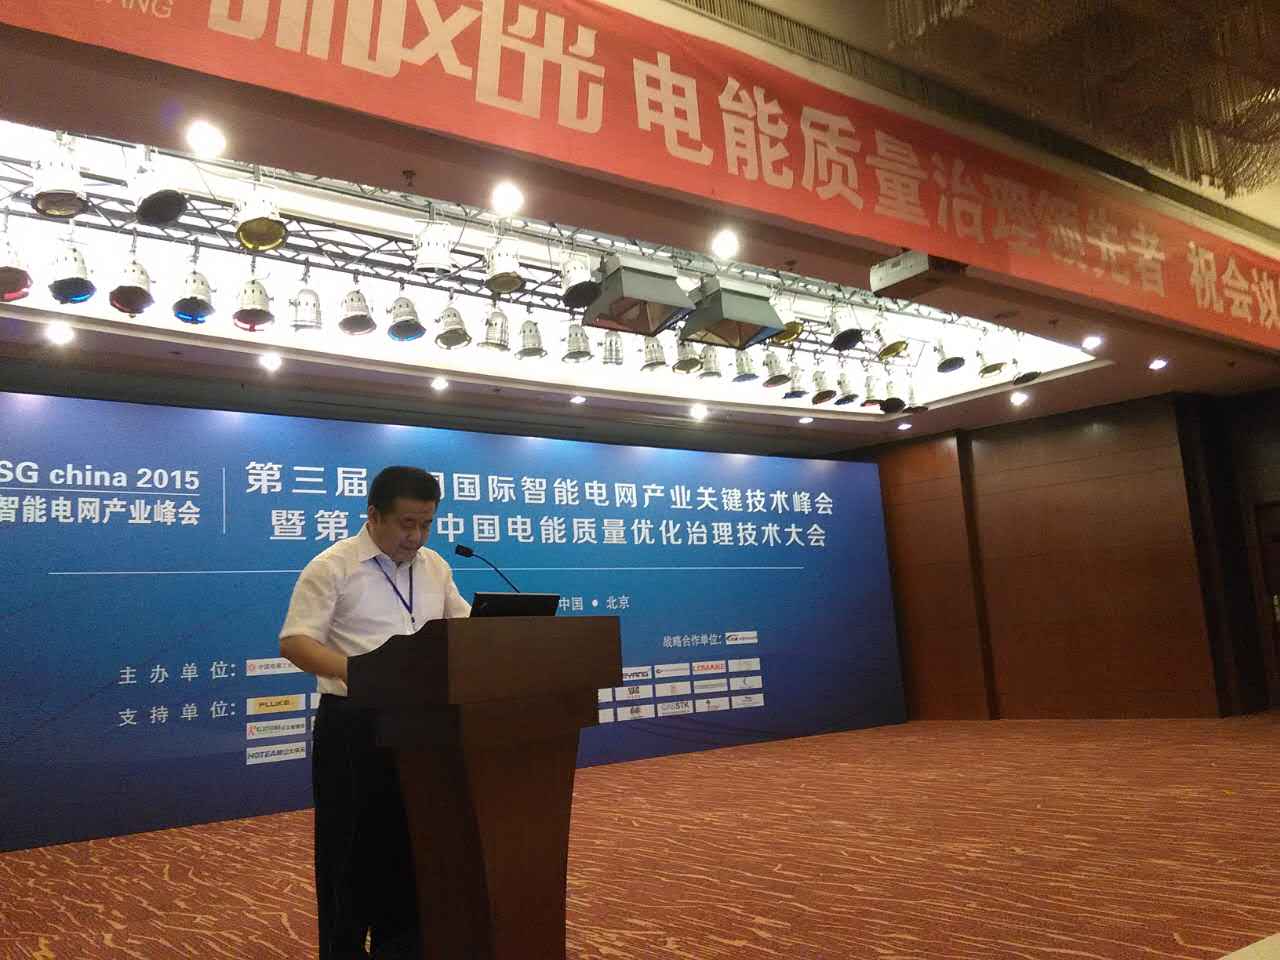 澳门尼威斯人公司参加第三届中国国际智能电网产业关键技术峰会